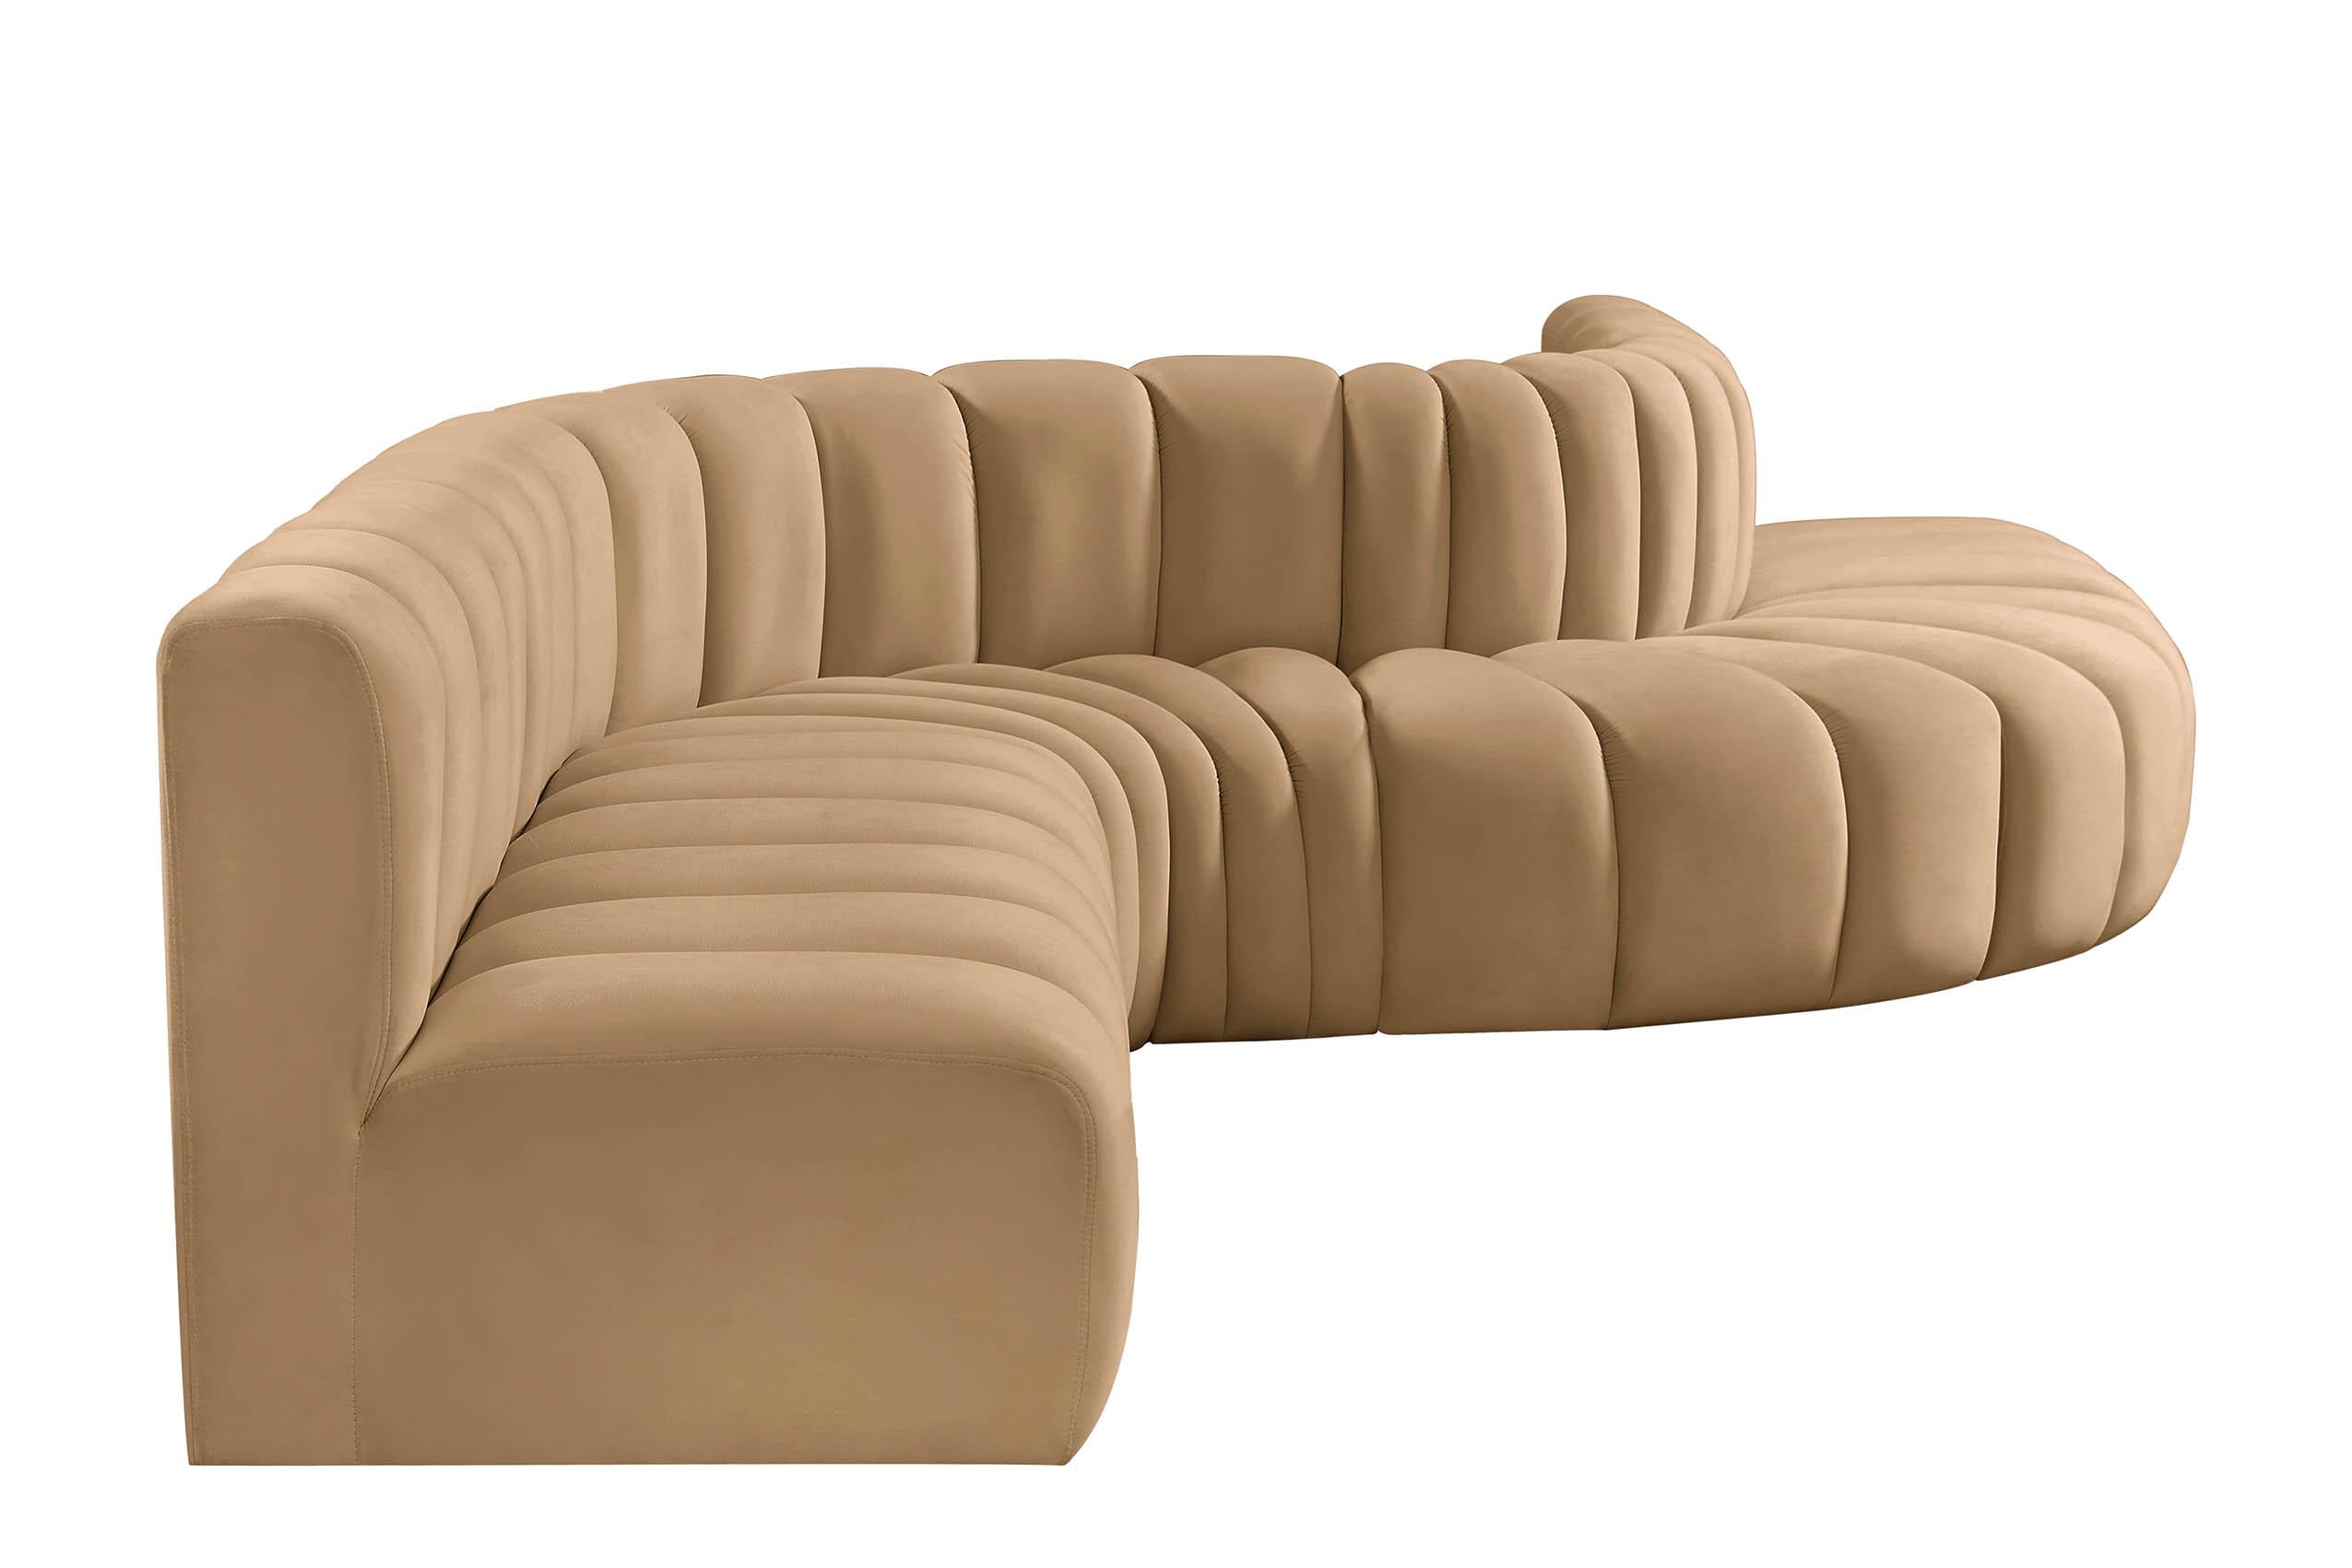 

    
103Camel-S7C Meridian Furniture Modular Sectional Sofa
